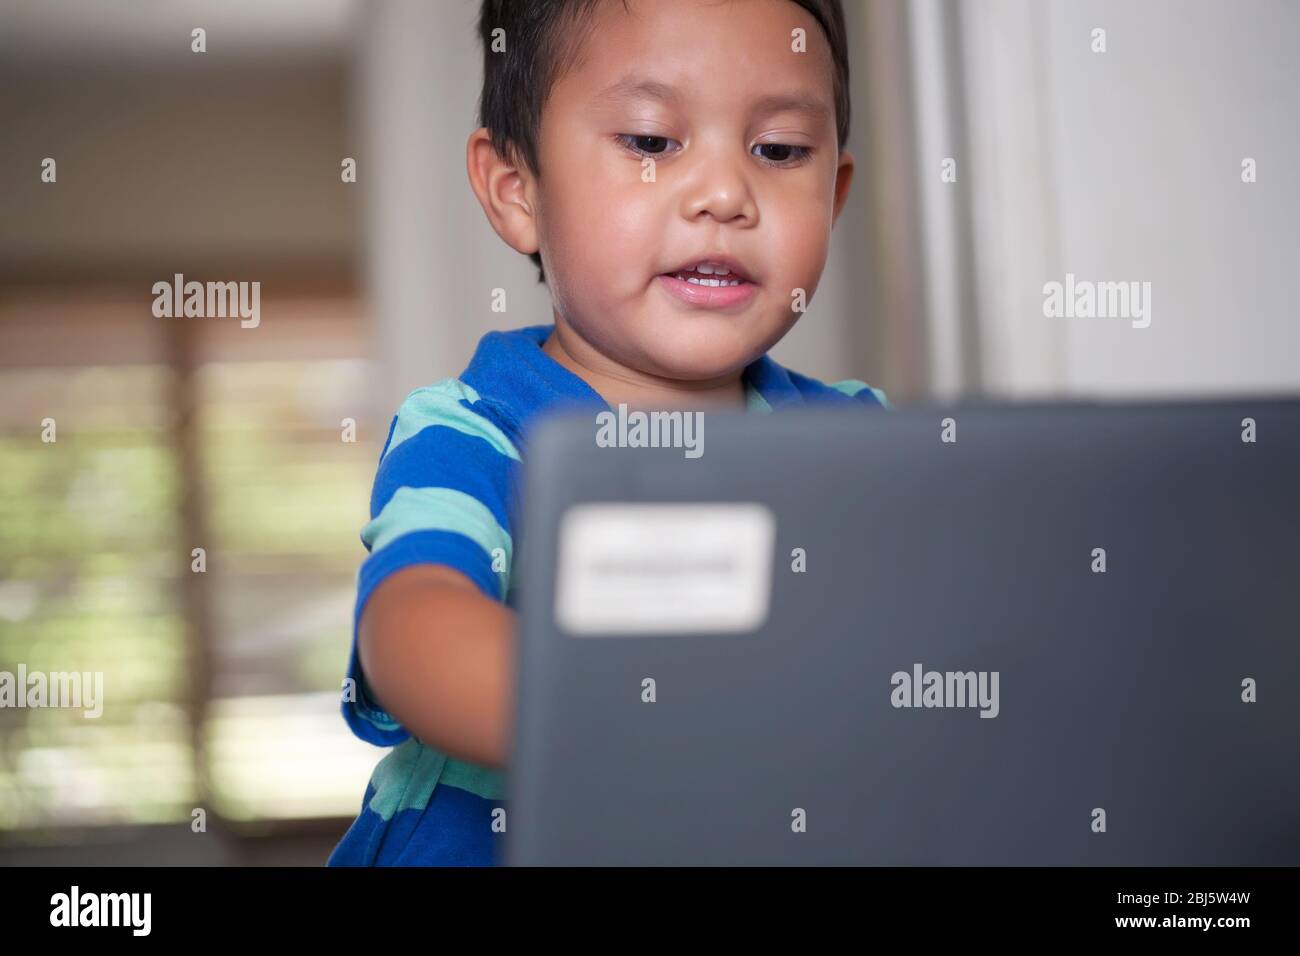 Un niño que participa en una clase de aprendizaje a distancia está utilizando un ordenador portátil para continuar la educación. Foto de stock